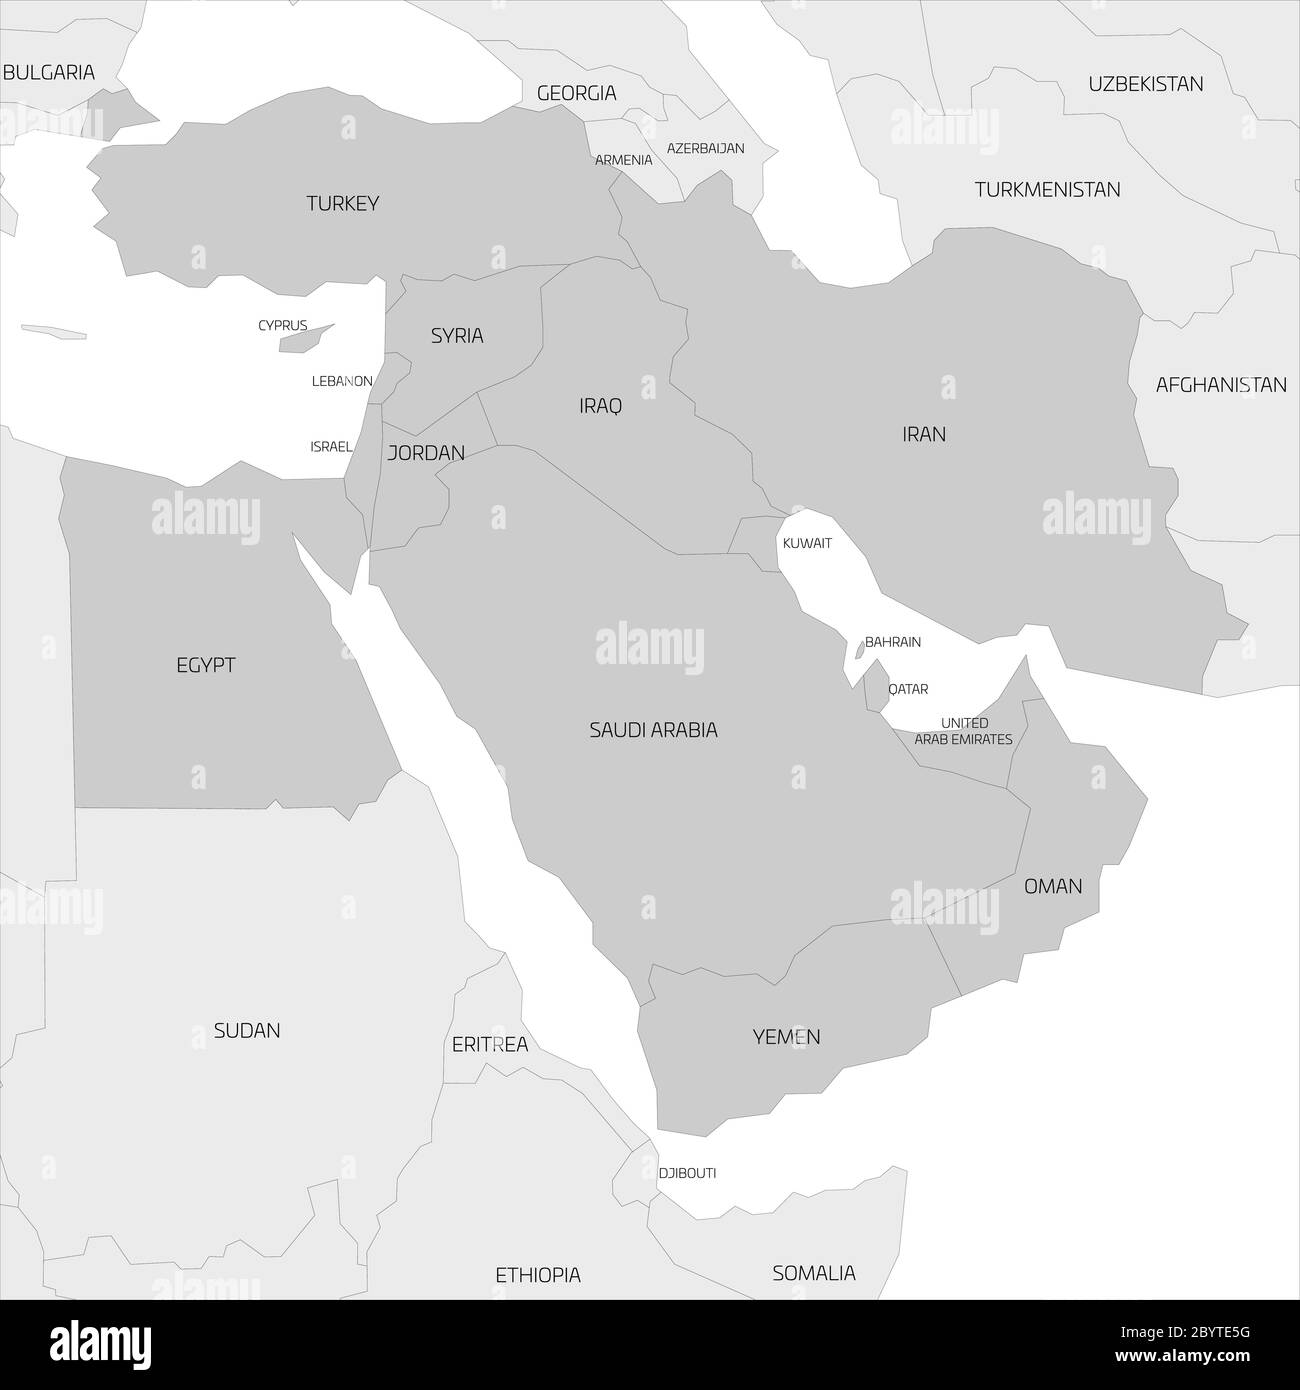 Karte der transkontinentalen Region Naher Osten oder Naher Osten mit hervorgehobenen Ländern Westasiens, der Türkei, Zypern und Ägypten. Flache graue Karte mit dünnen schwarzen Bordüren. Stock Vektor